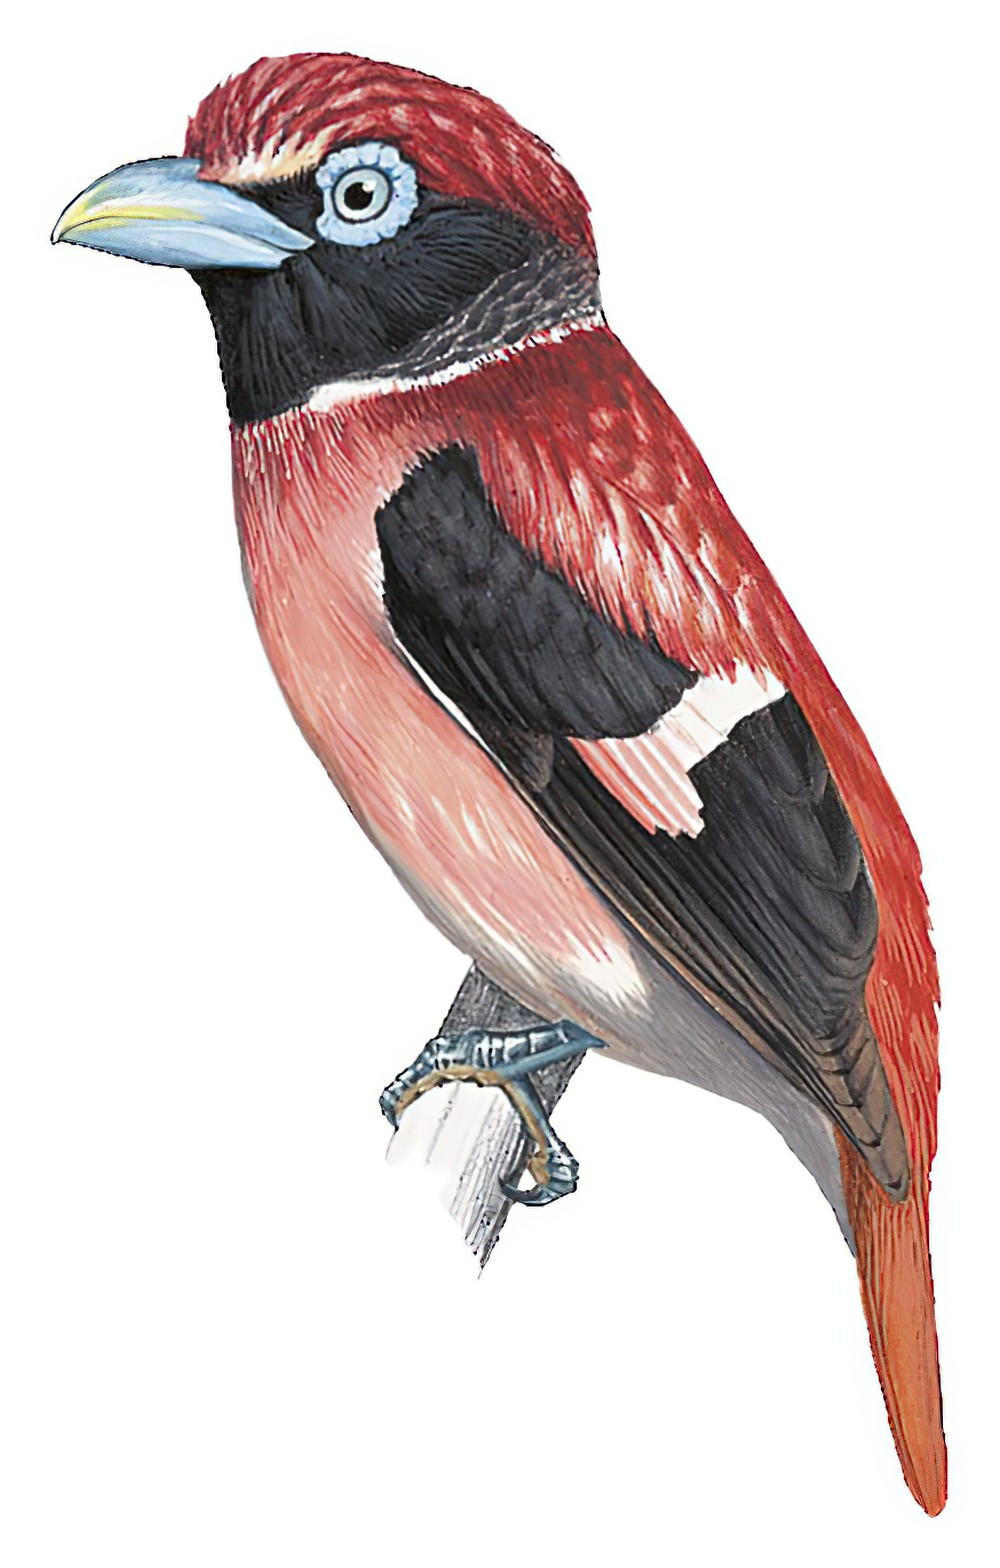 米沙岛阔嘴鸟 / Visayan Broadbill / Sarcophanops samarensis